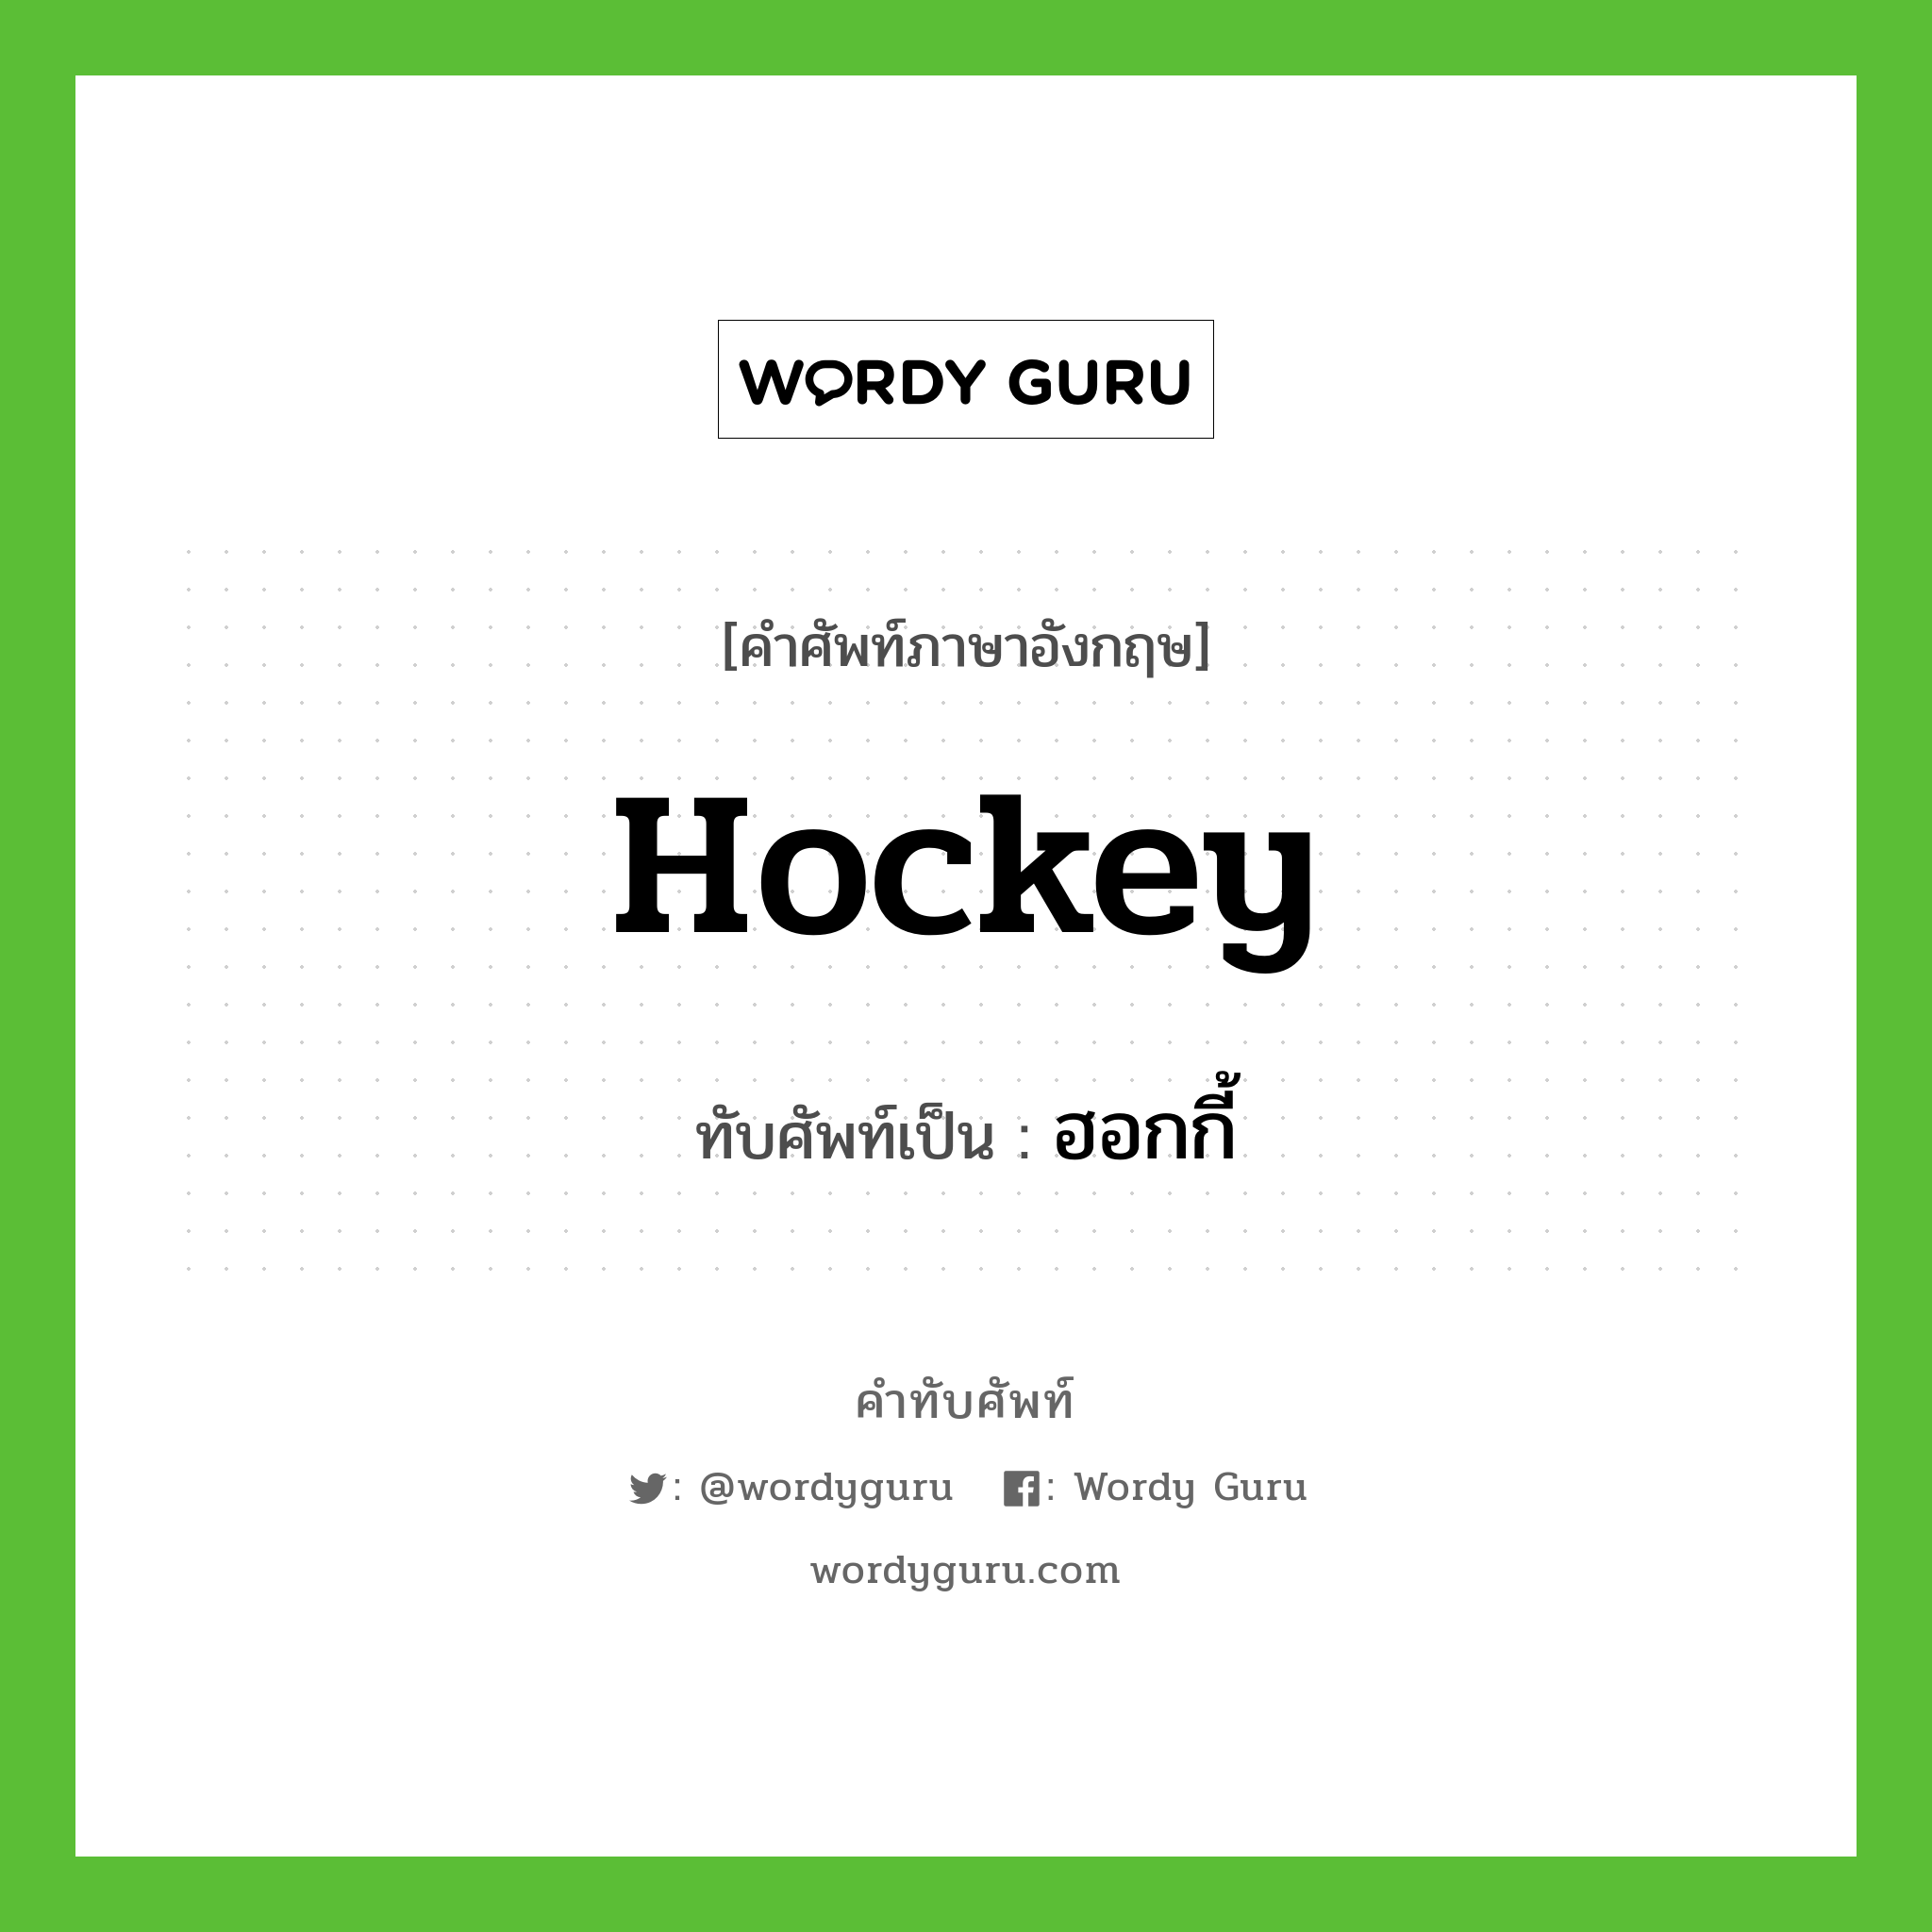 hockey เขียนเป็นคำไทยว่าอะไร?, คำศัพท์ภาษาอังกฤษ hockey ทับศัพท์เป็น ฮอกกี้